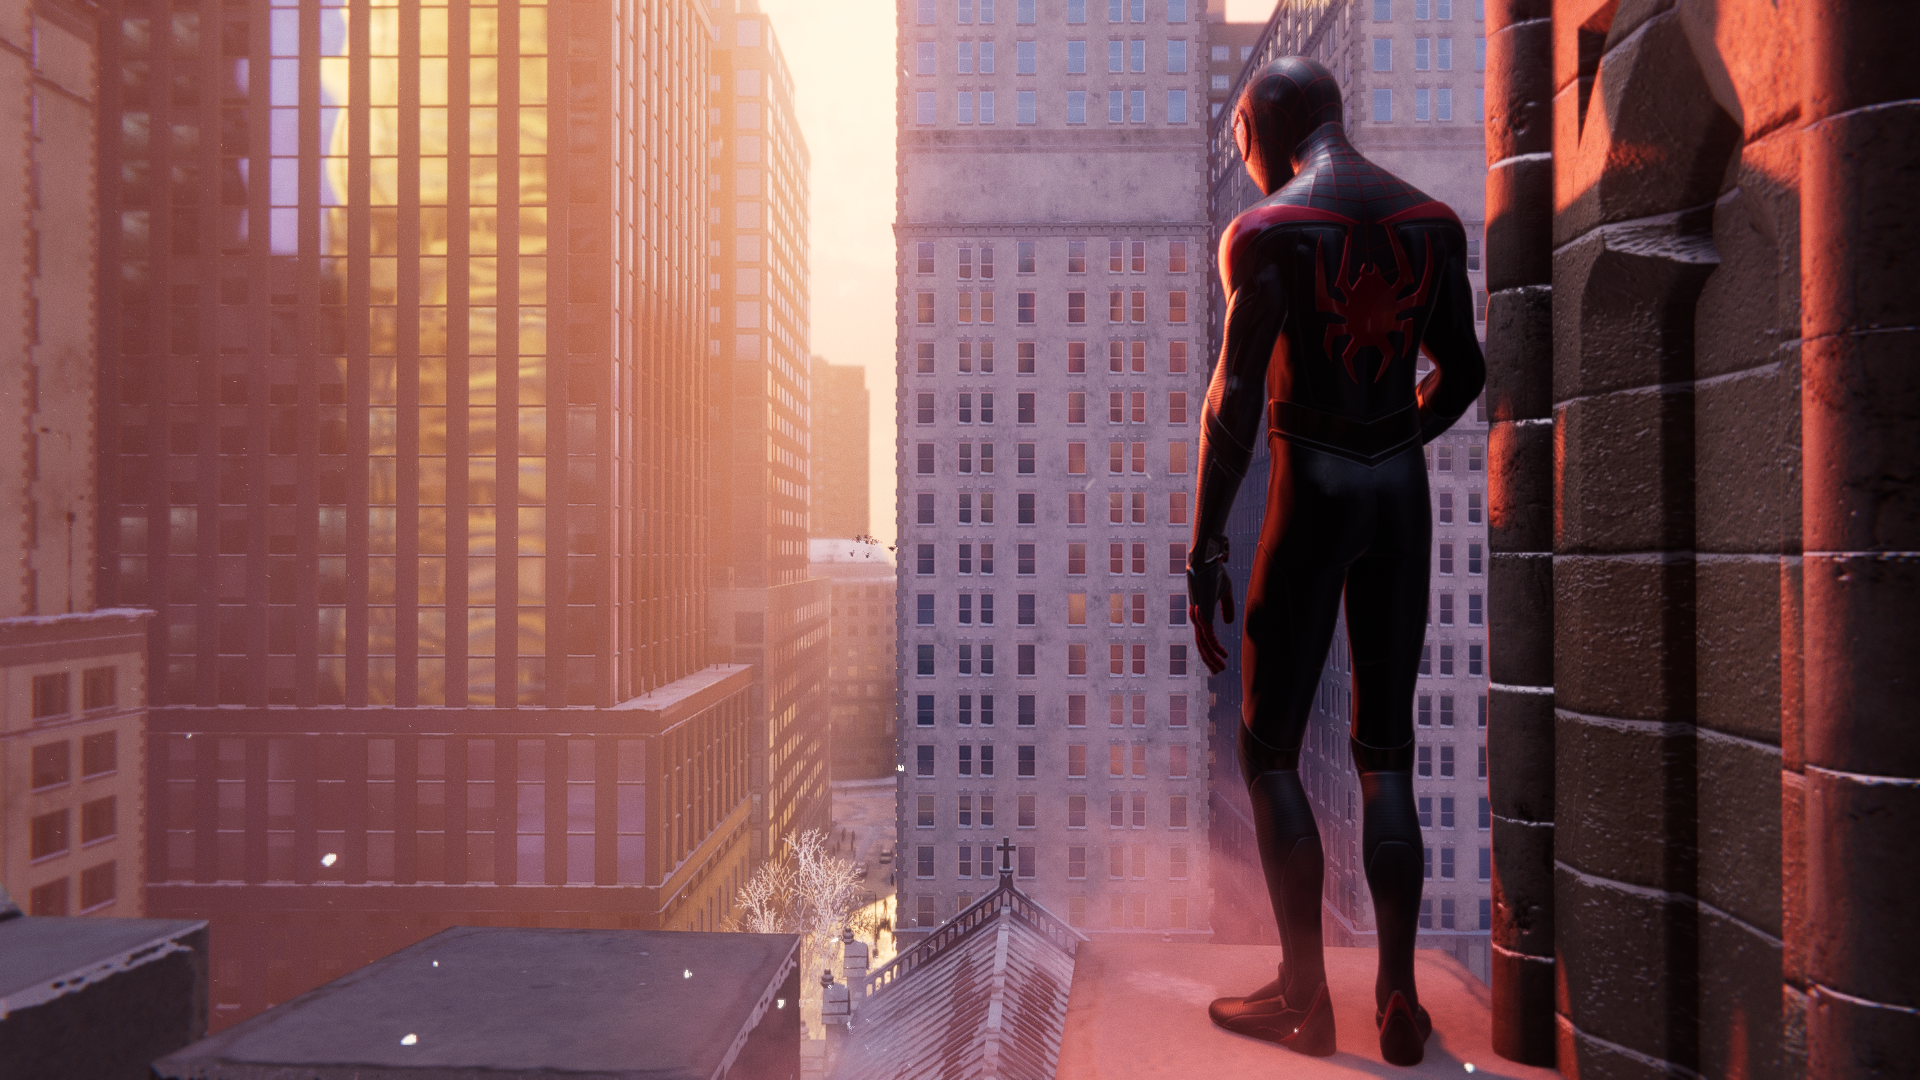 Marvel's Spider-Man Remastered (PS5) tem mais detalhes revelados e uma  mudança importante - GameBlast